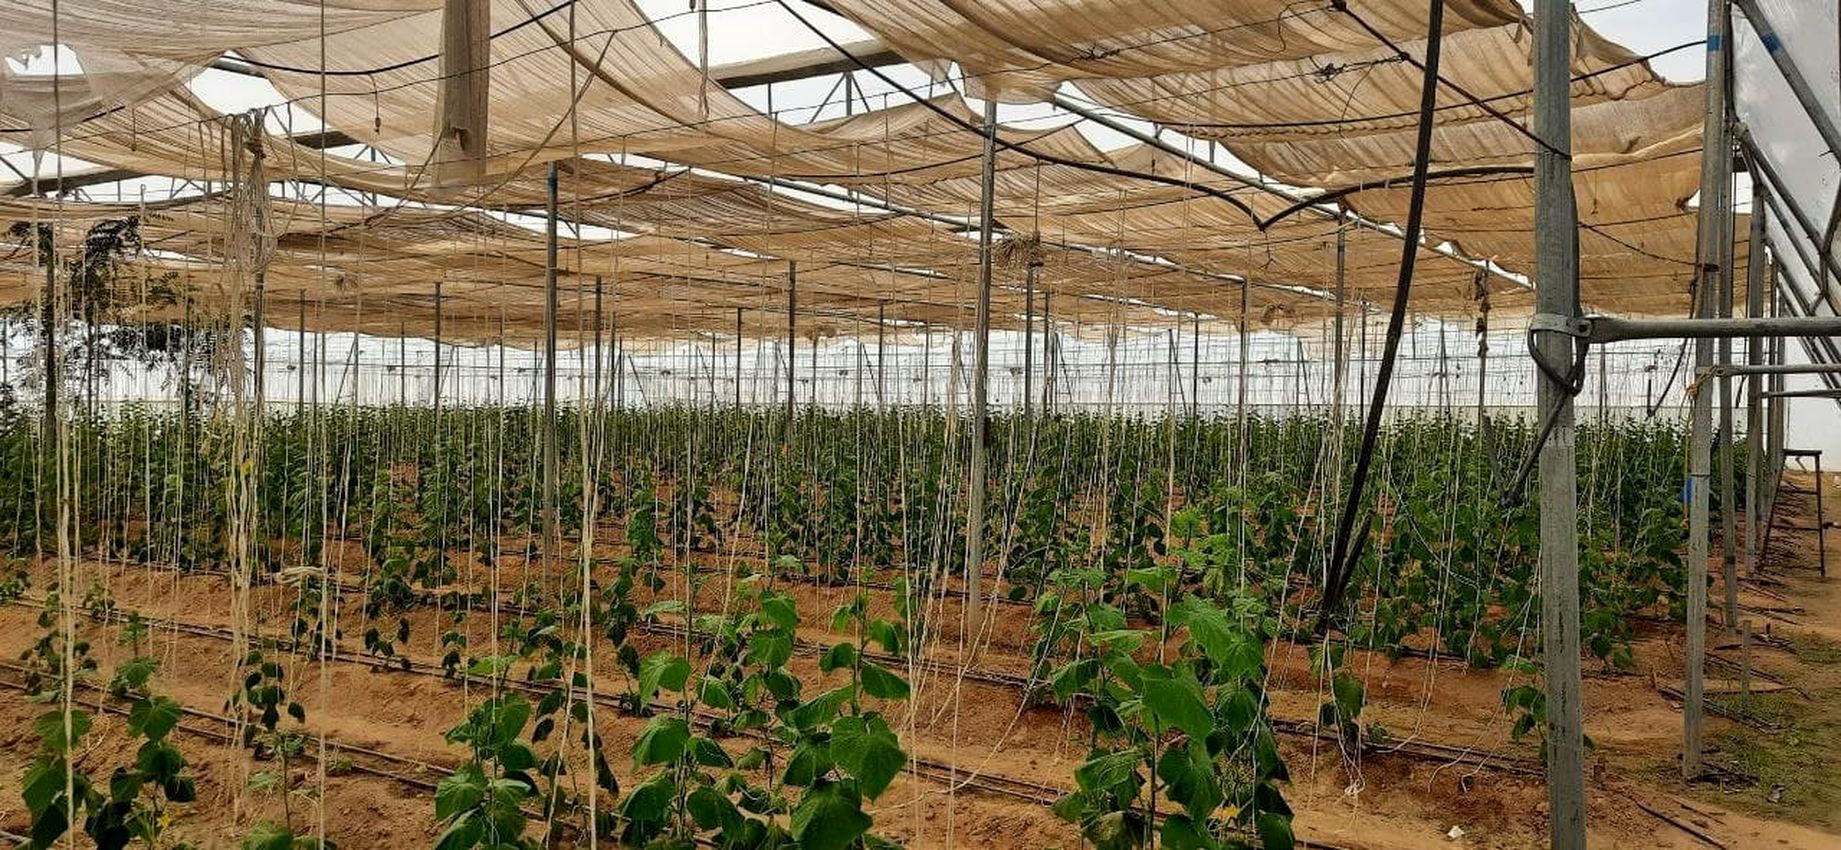 युवा किसान ने जैविक खाद व बूंद-बूंद सिंचाई सिस्टम को अपनाकर अर्जित की लाखों की आय